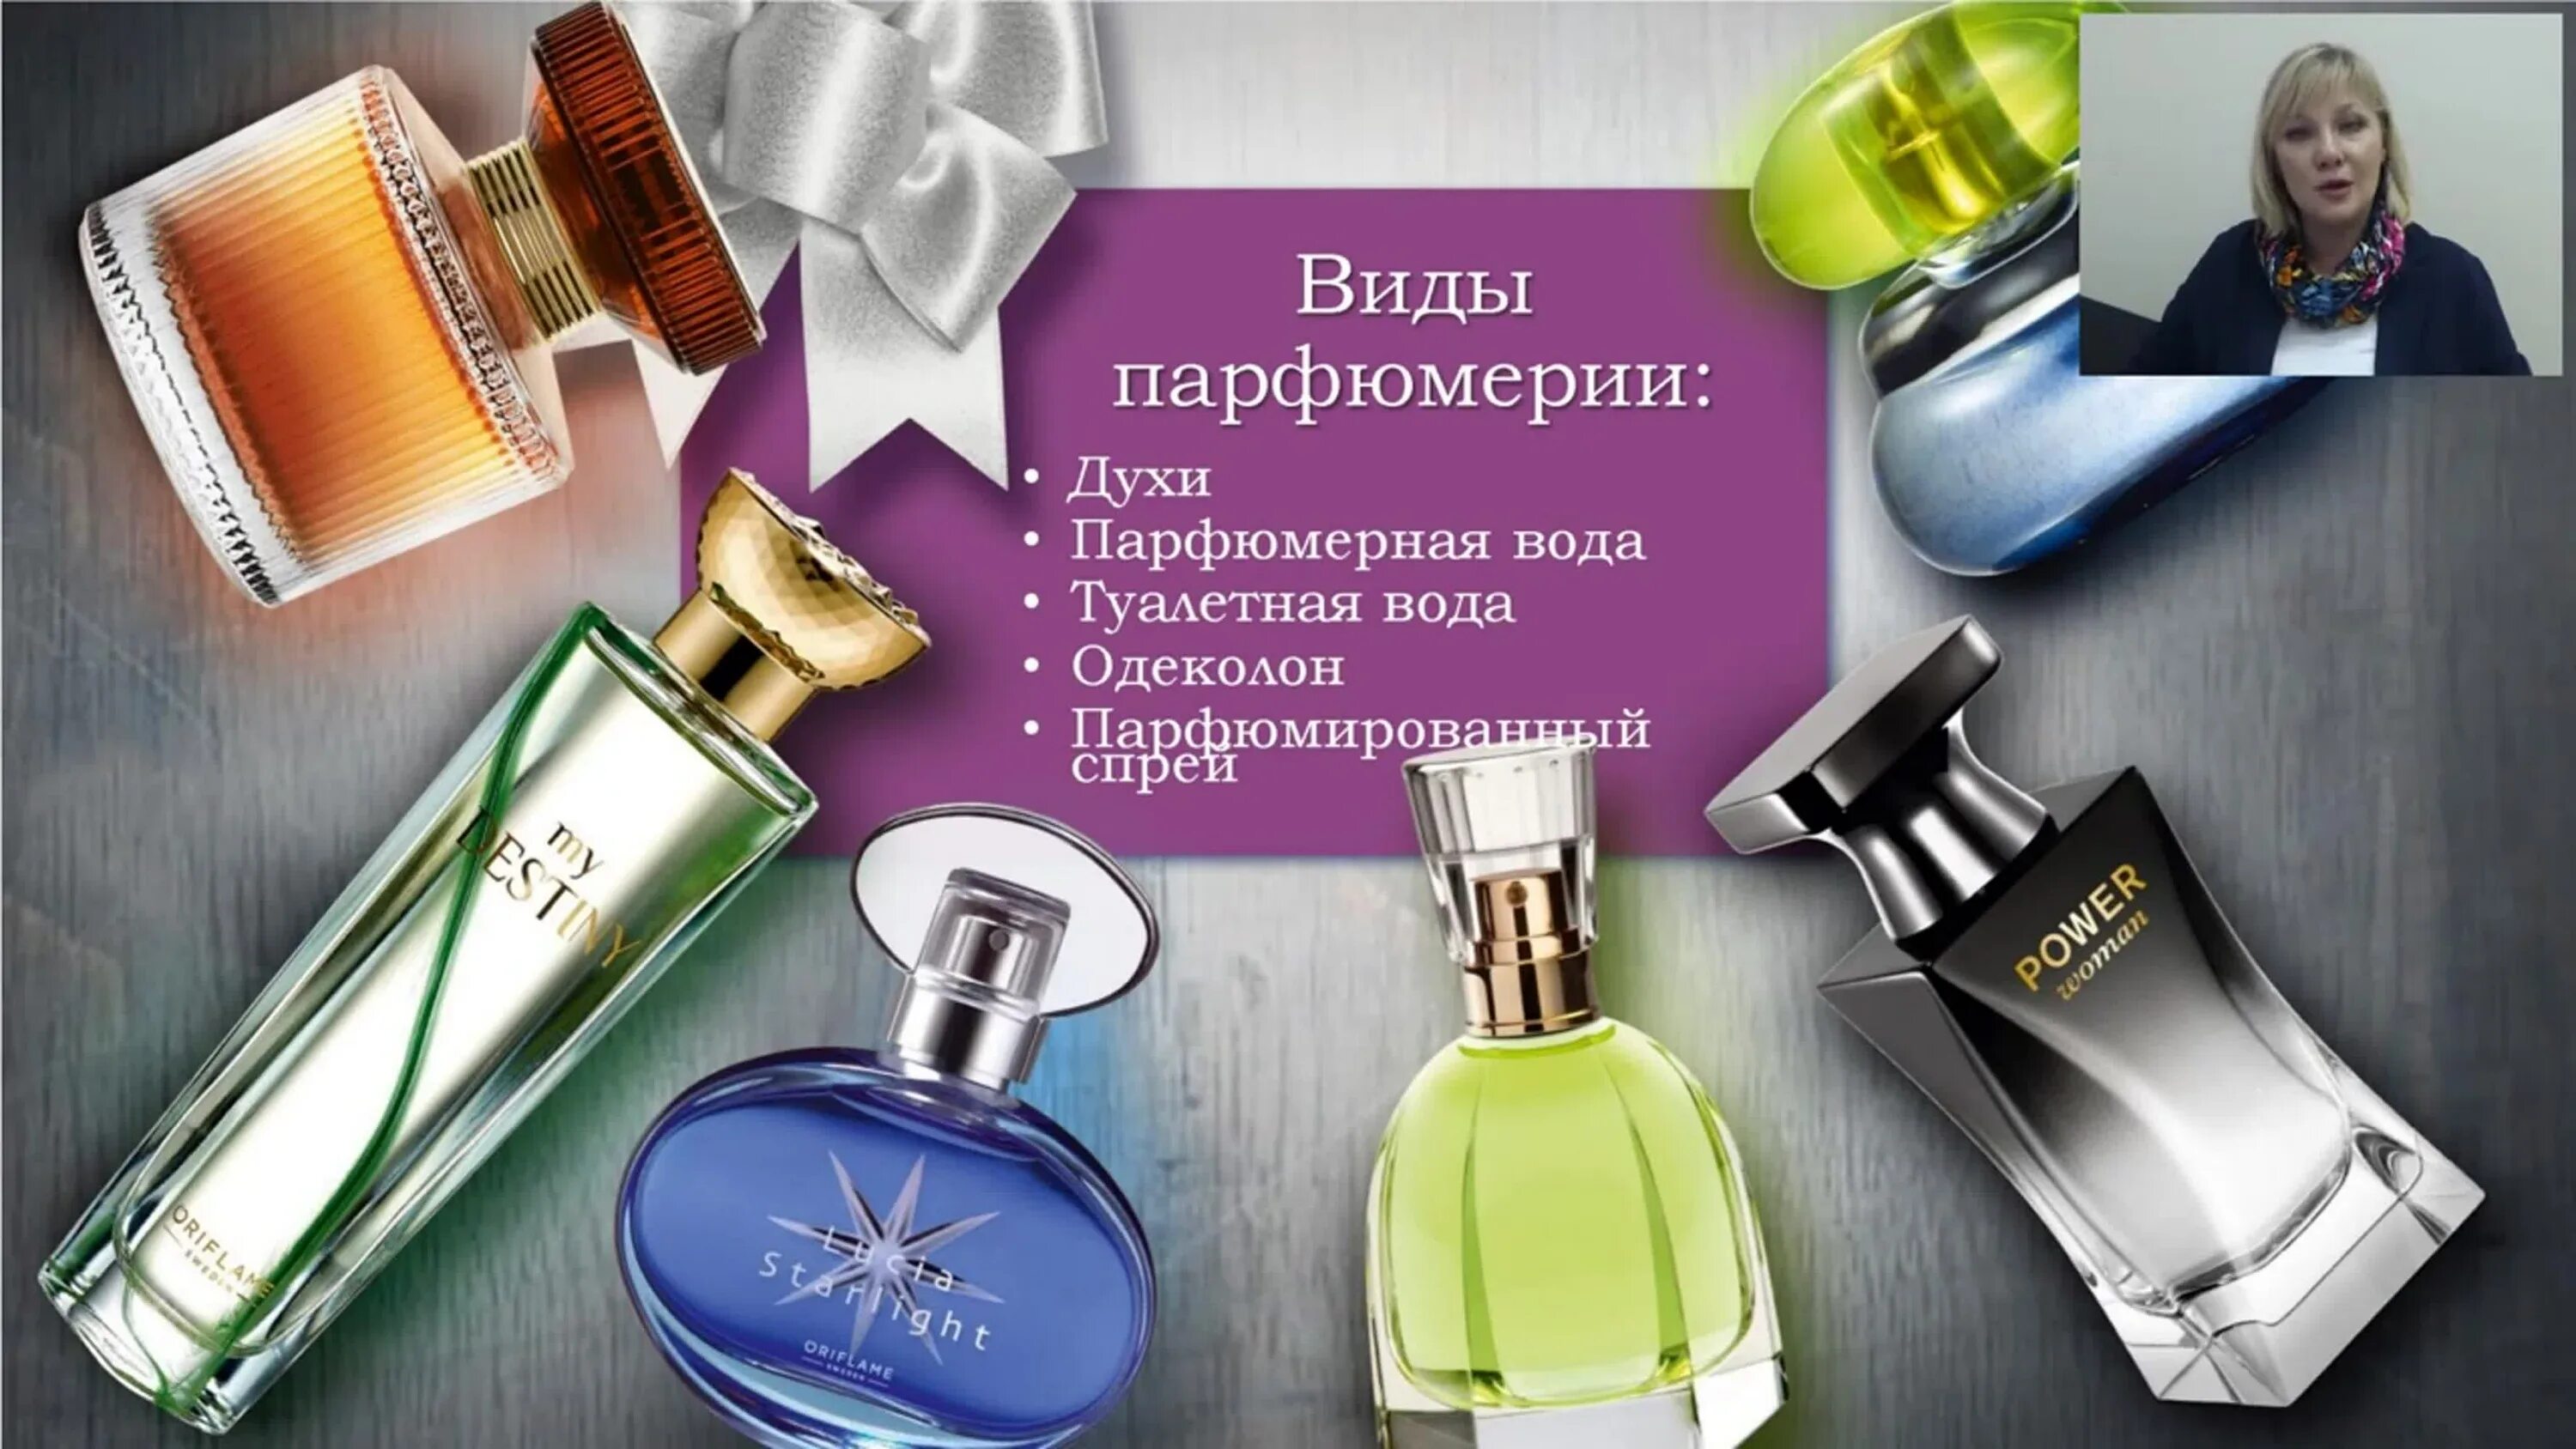 Виды парфюмерии. Виды парфюмерной продукции. Духи виды ароматов. Стойкость туалетной воды и парфюмерной воды.